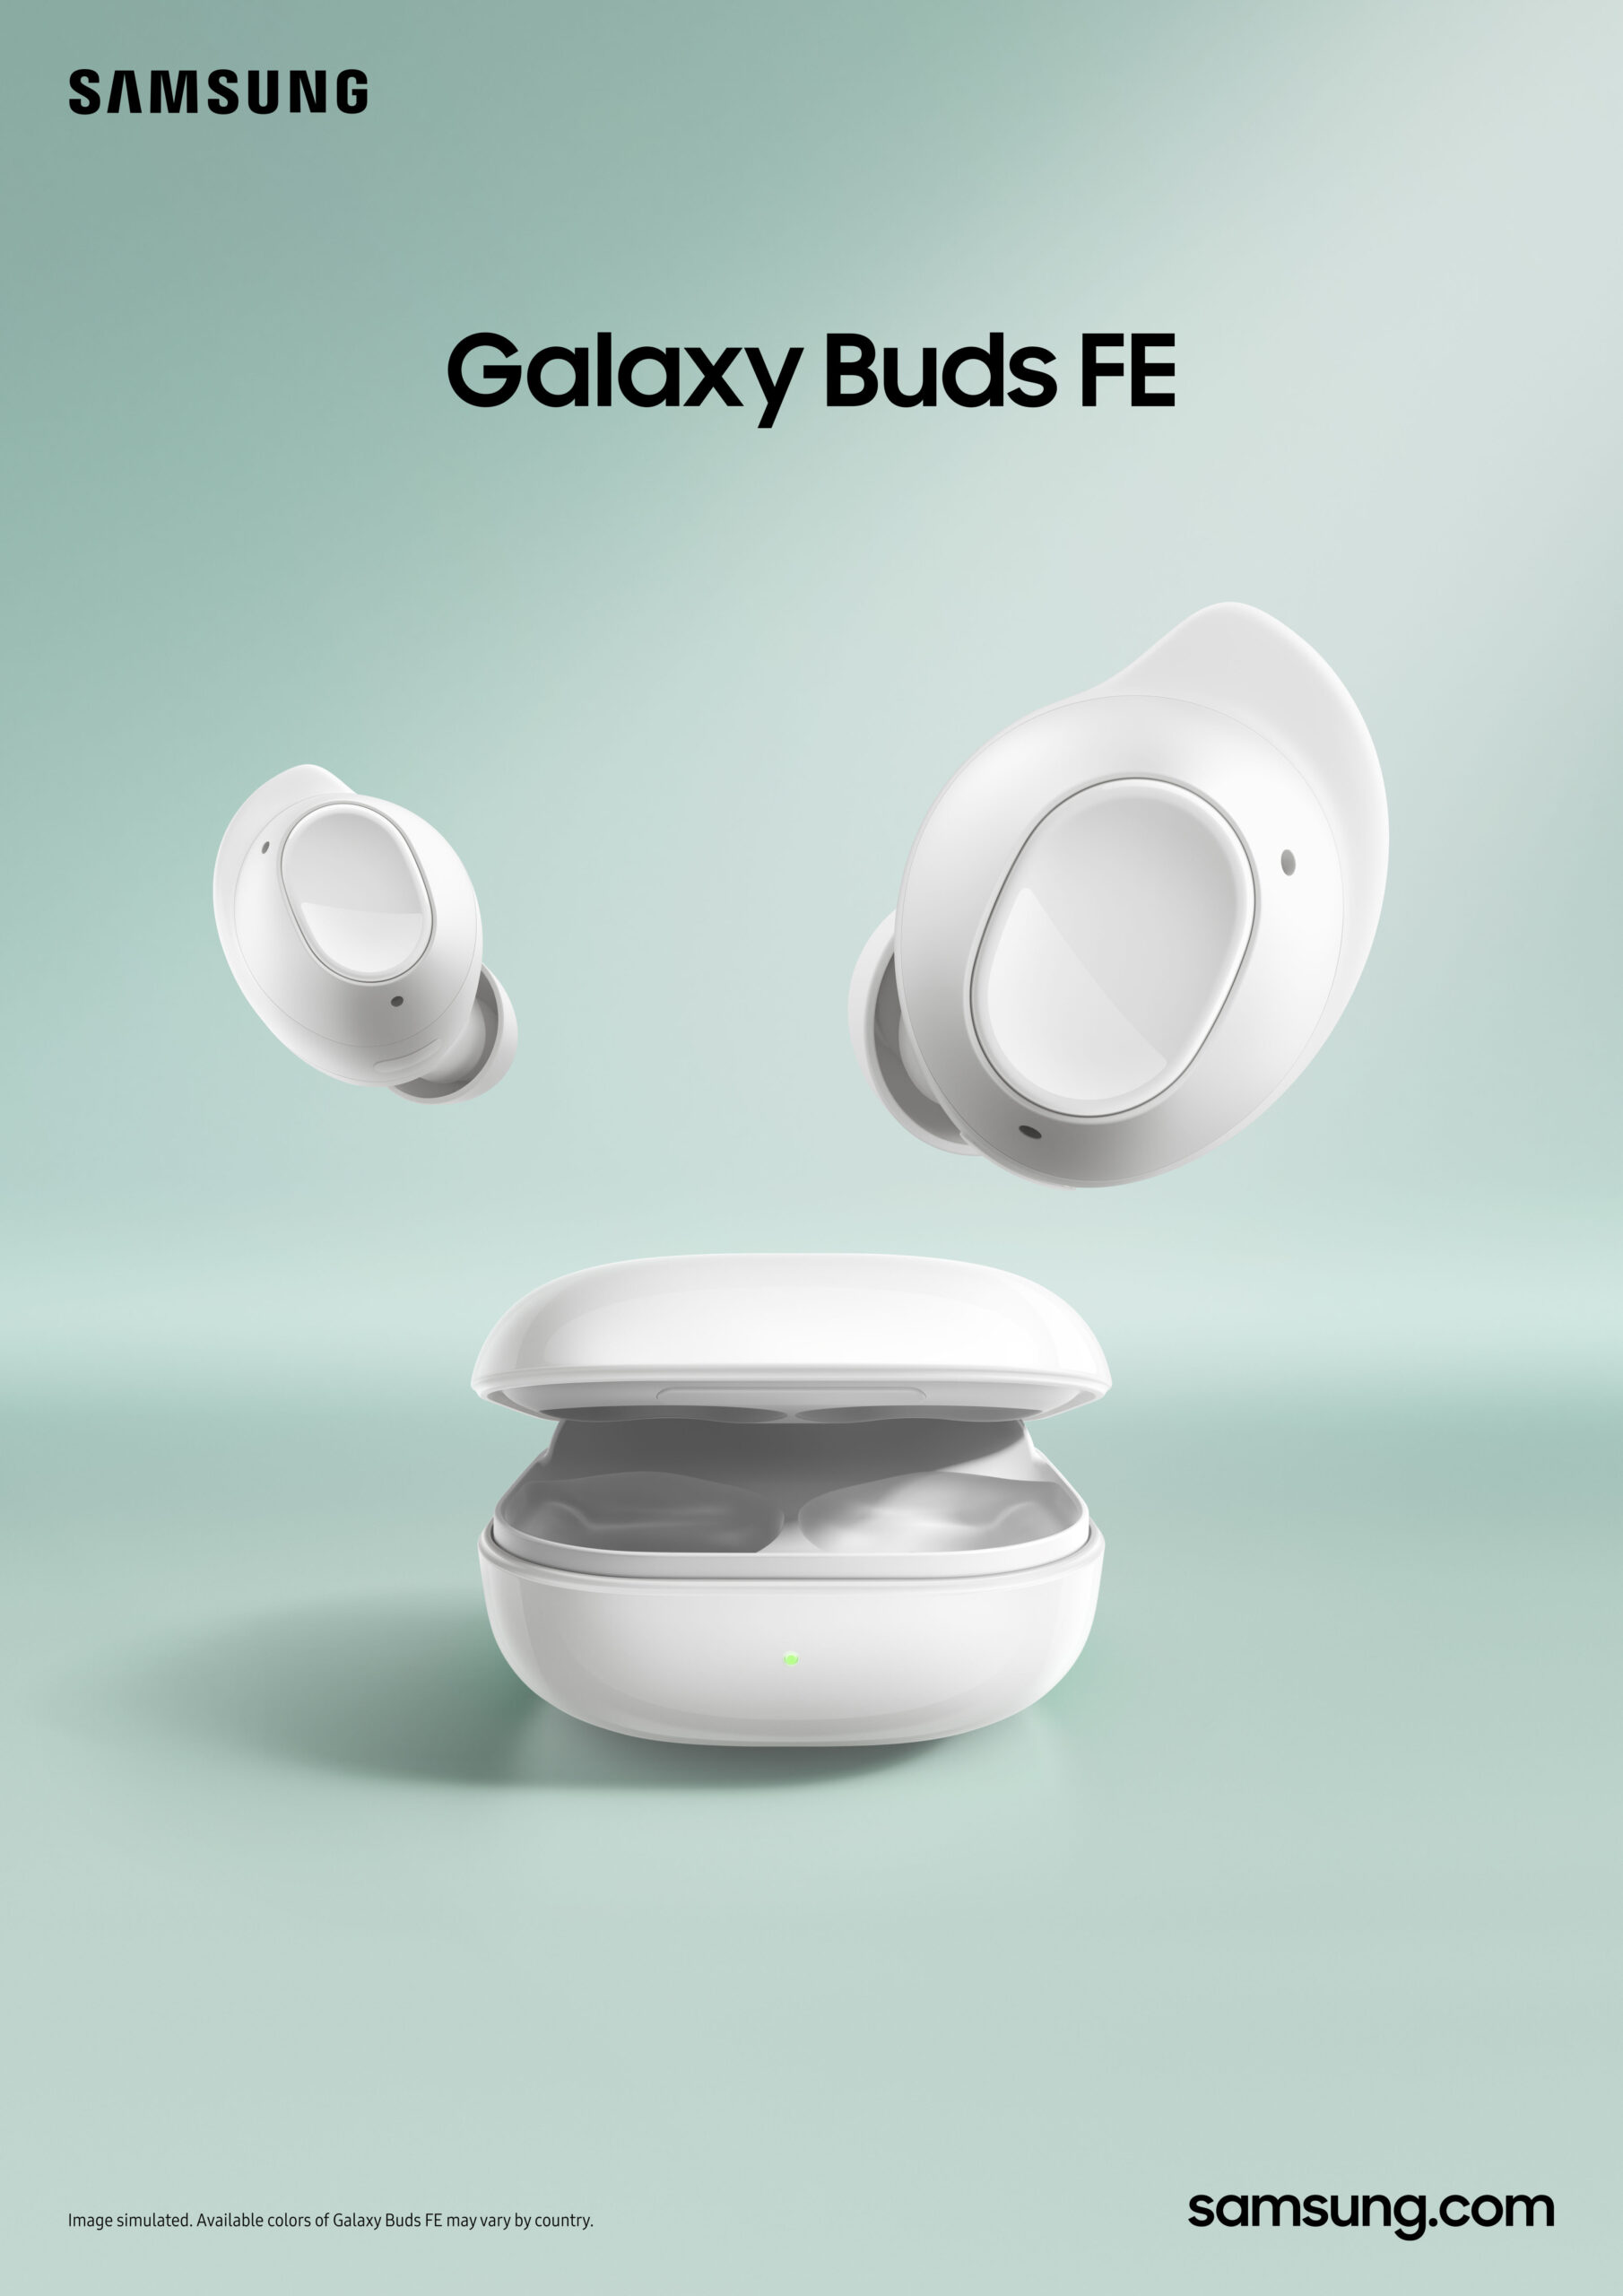 Conecta tus dispositivos a los Galaxy Buds FE  y disfruta todo con sonido superior